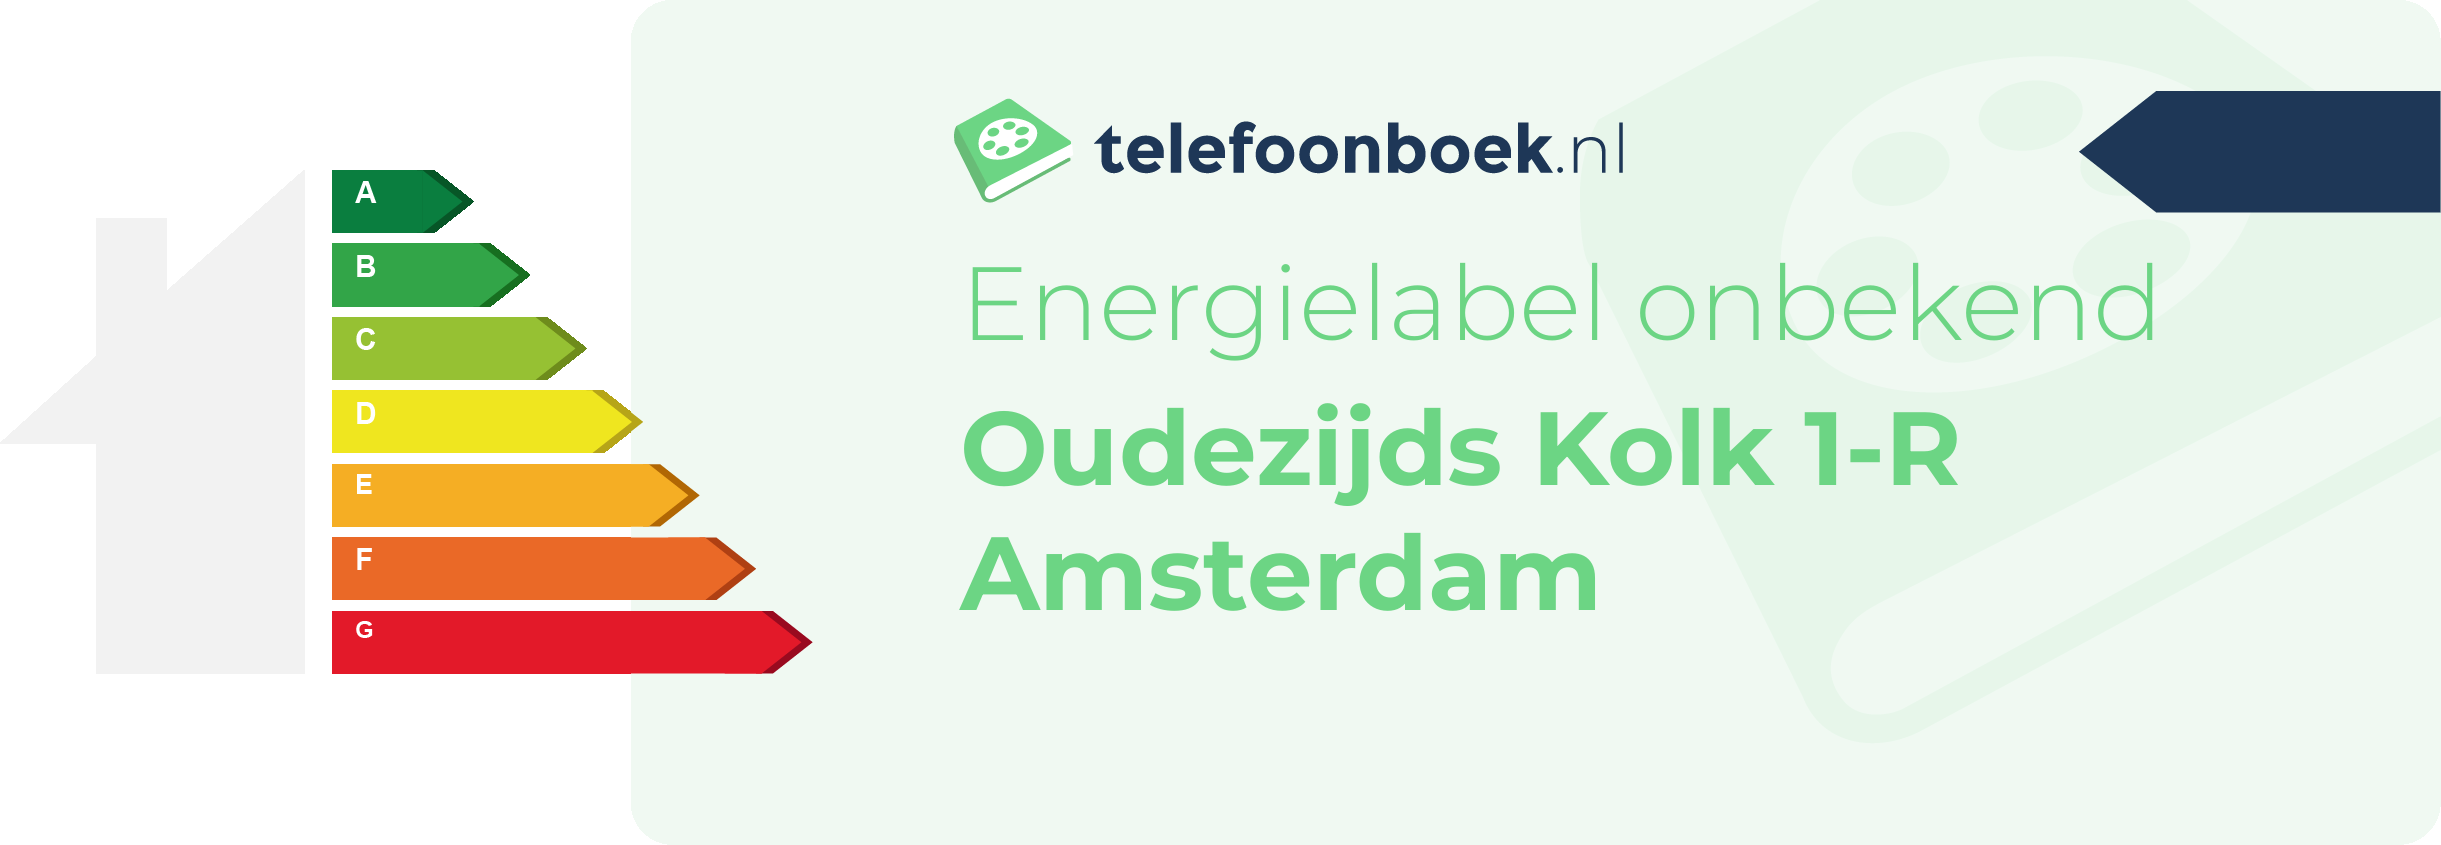 Energielabel Oudezijds Kolk 1-R Amsterdam